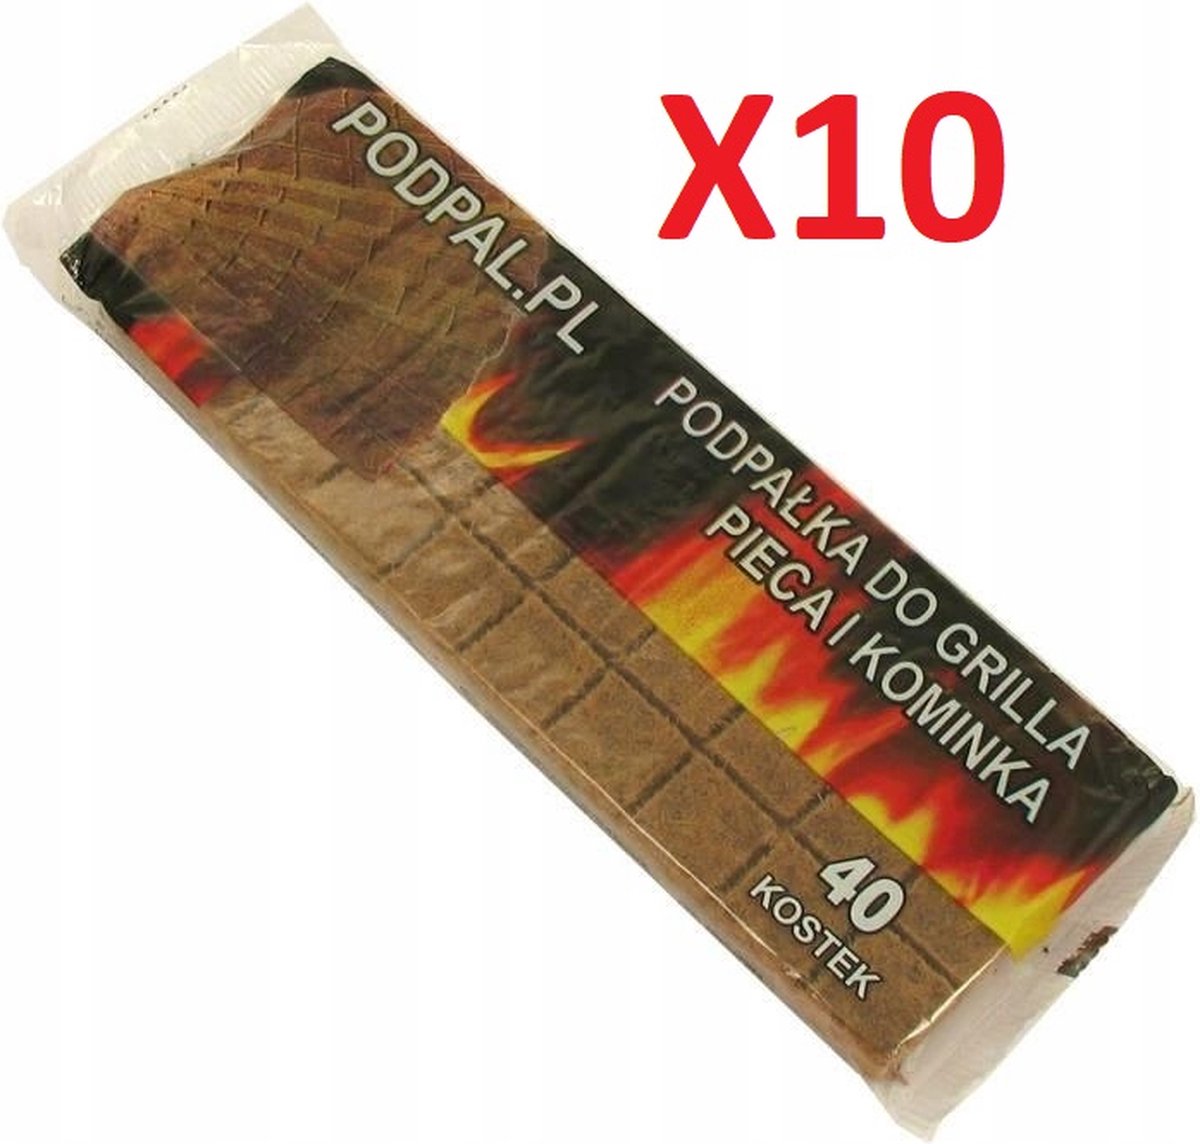 Aanmaakblokjes 10 pakken van 40 stuks - Bruin - openhaard - kachel - voor houtkachel - firelighters to fire up